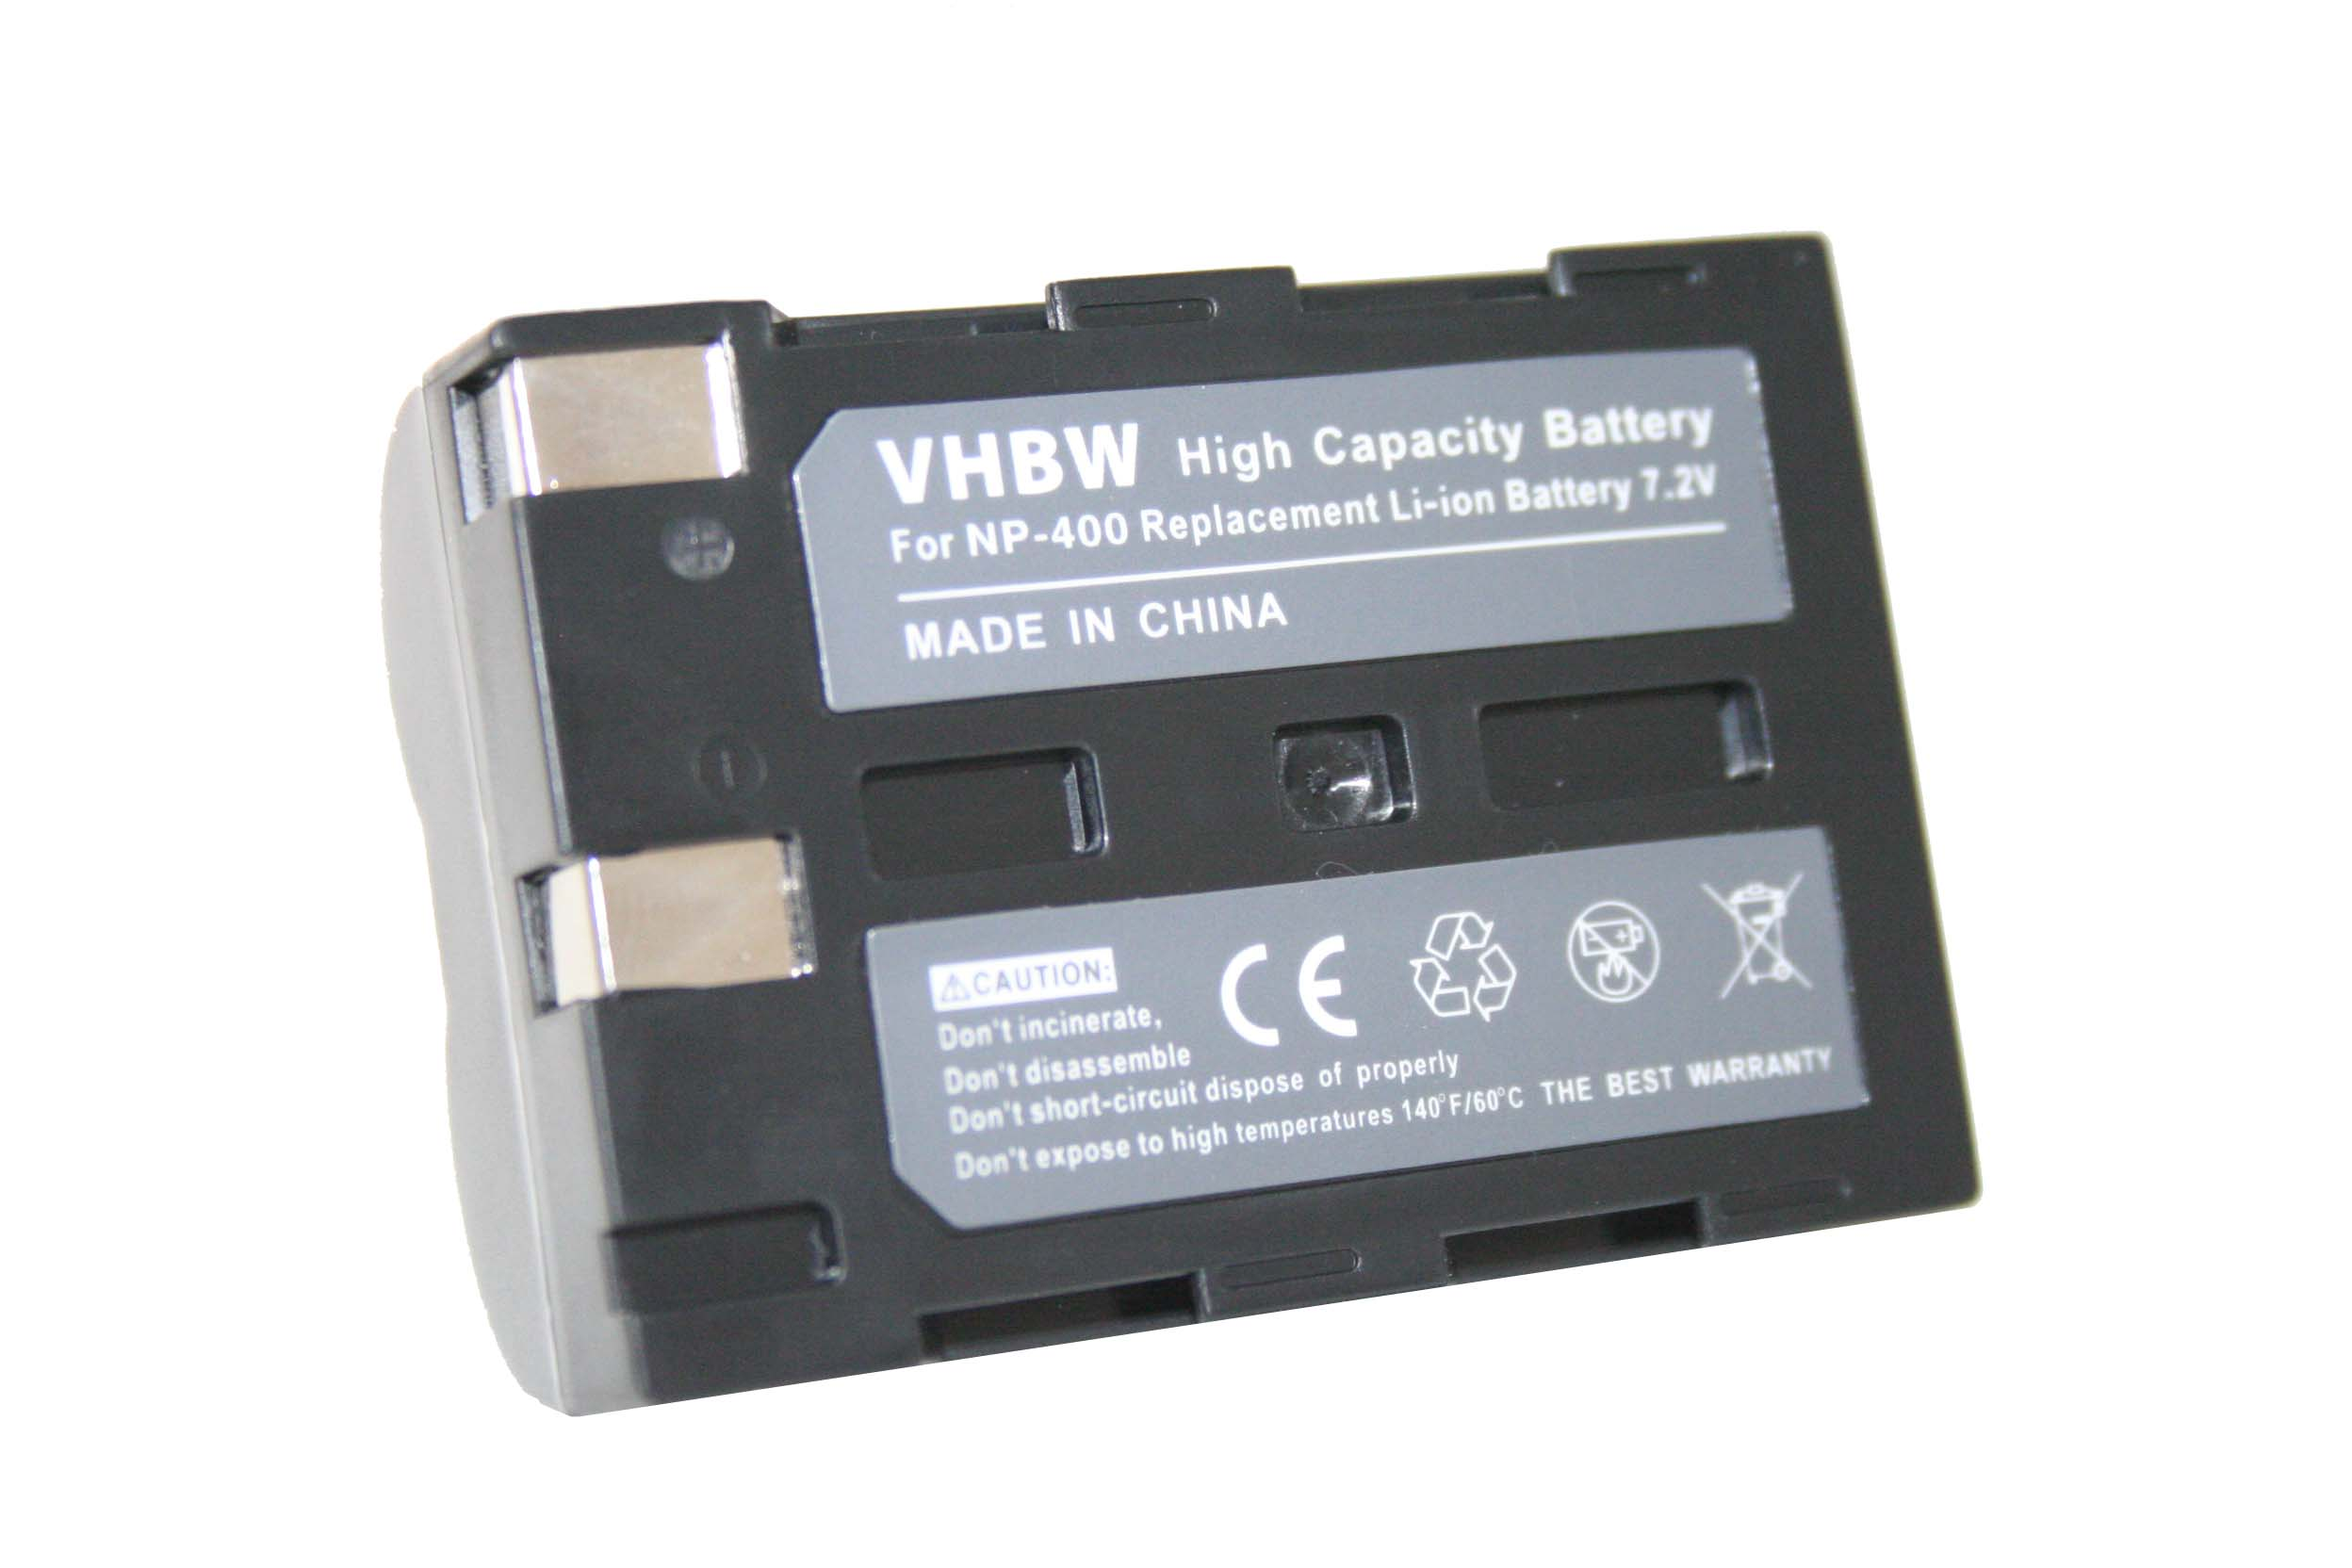 VHBW kompatibel mit Pentax K20D, Kamera, Volt, Akku K10D Li-Ion 7.2 - 1200